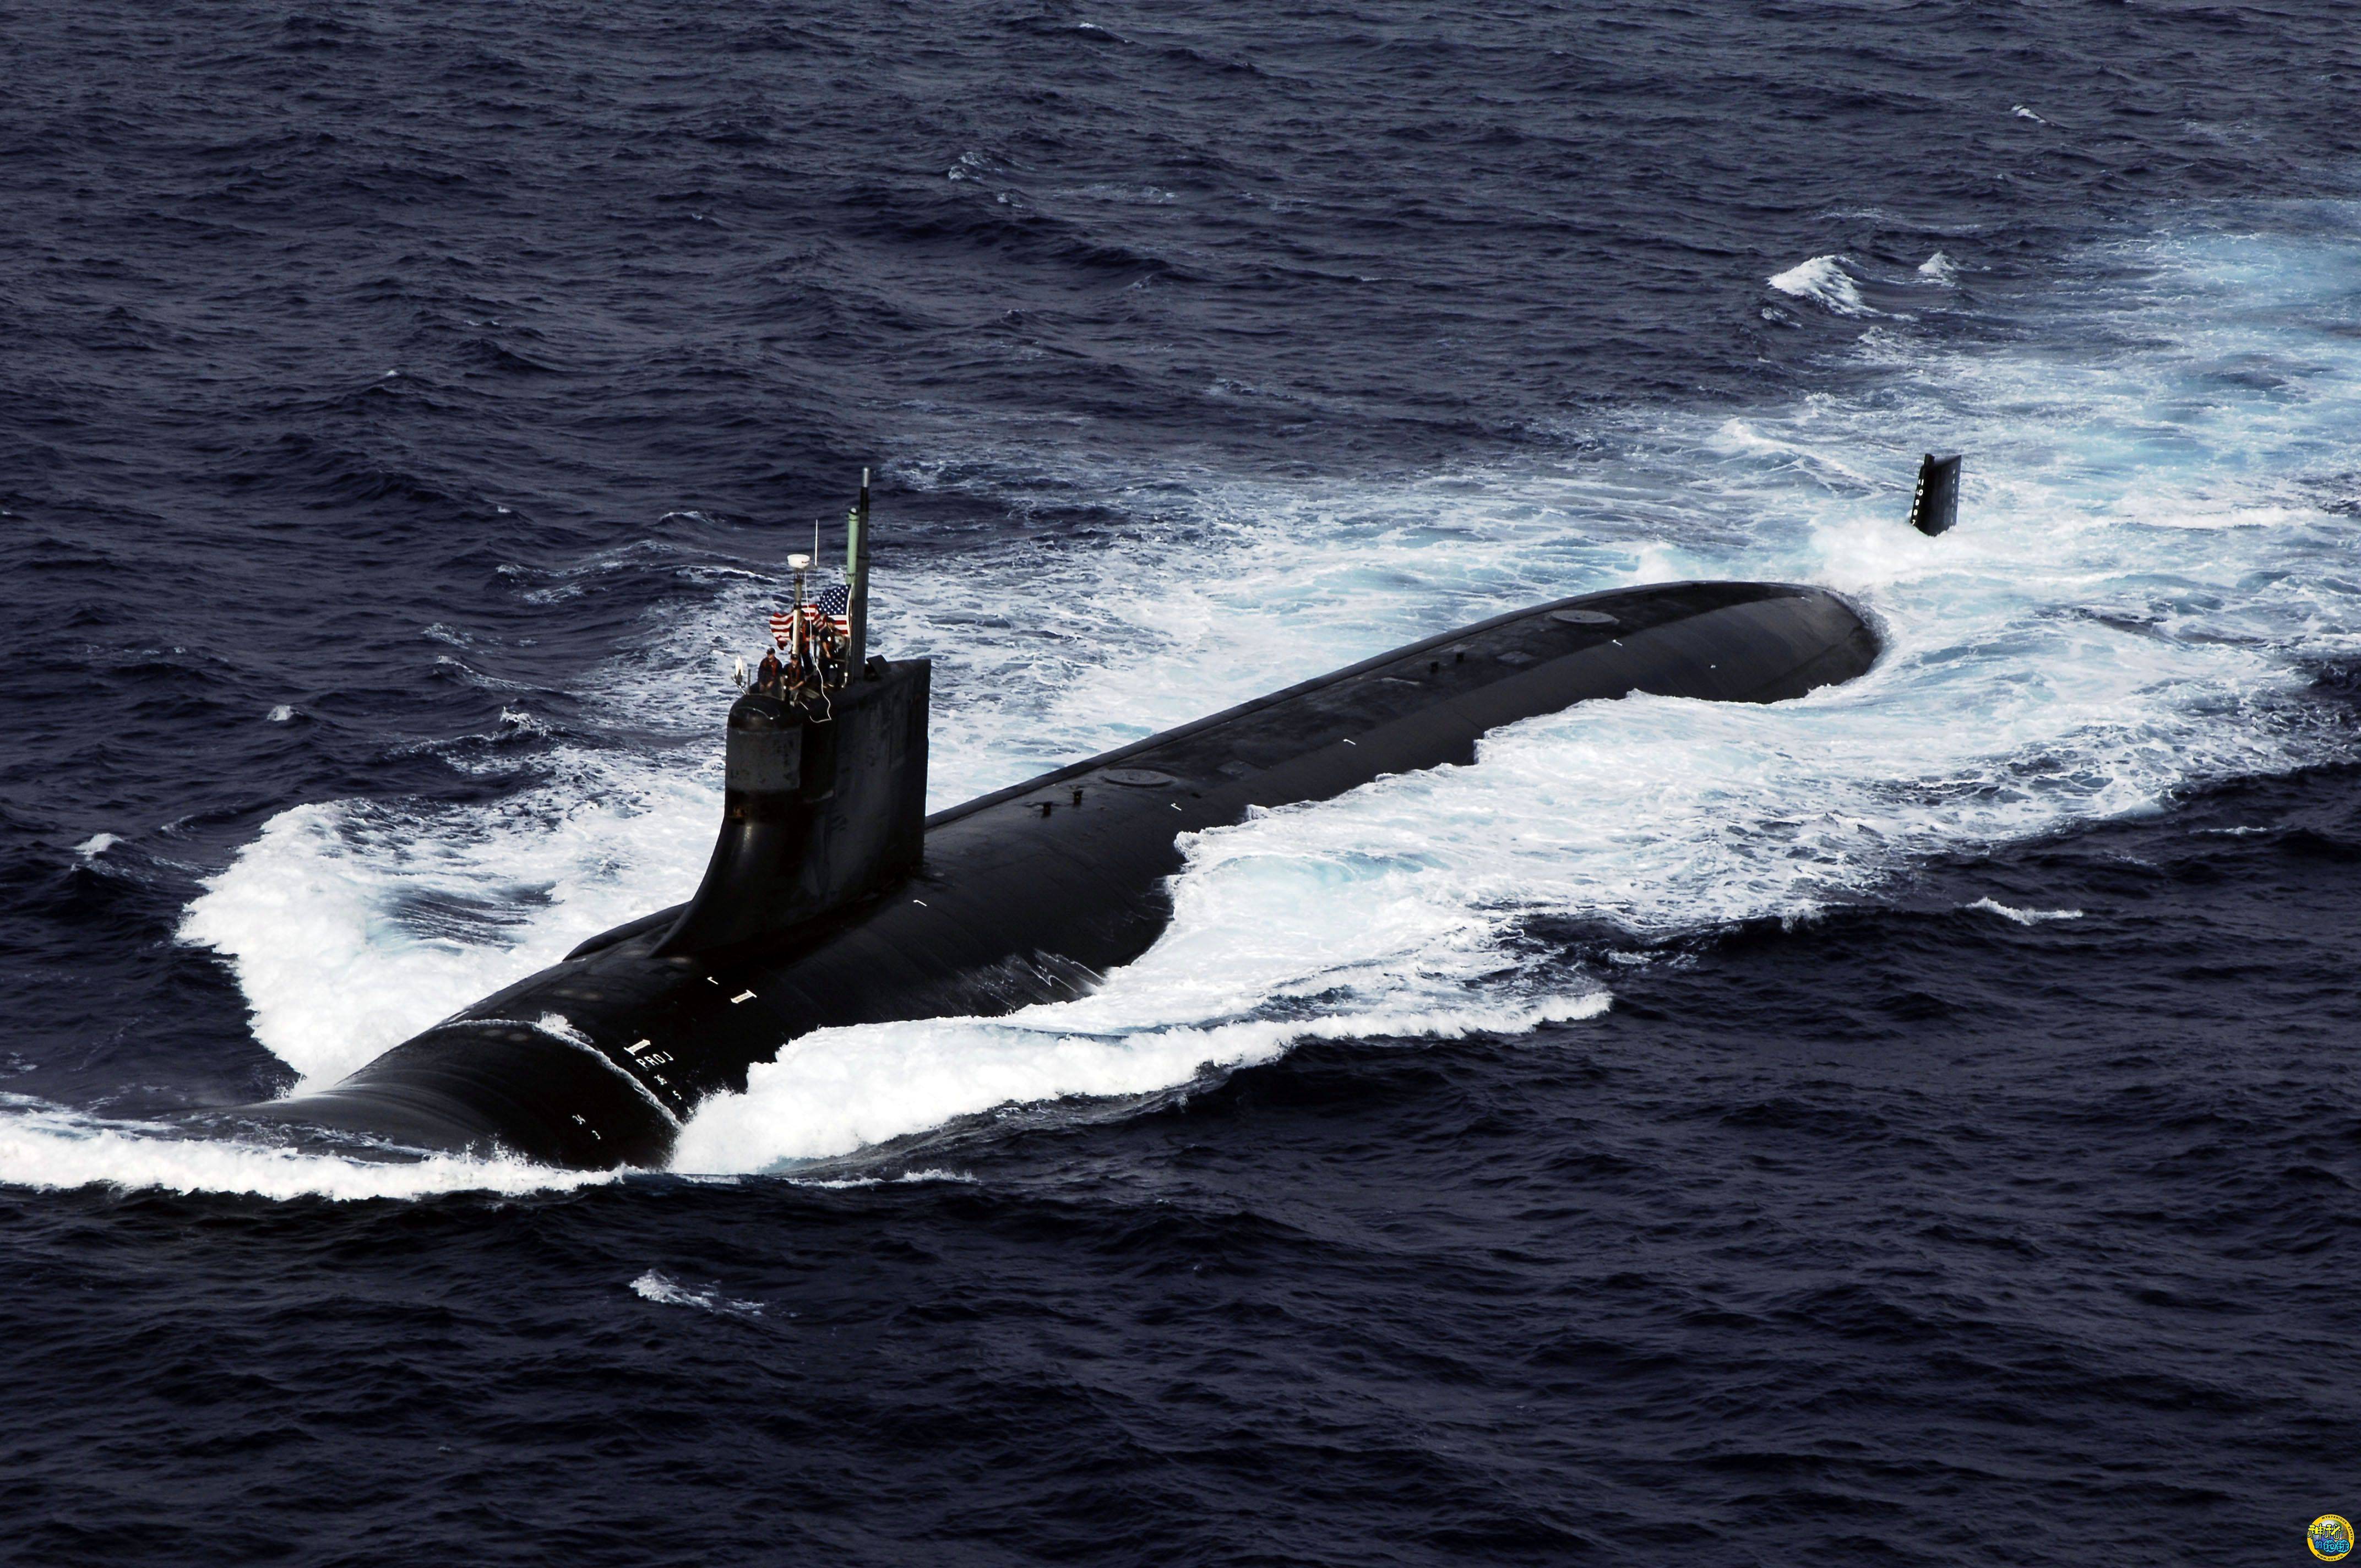 伊朗研制最大潜艇图片